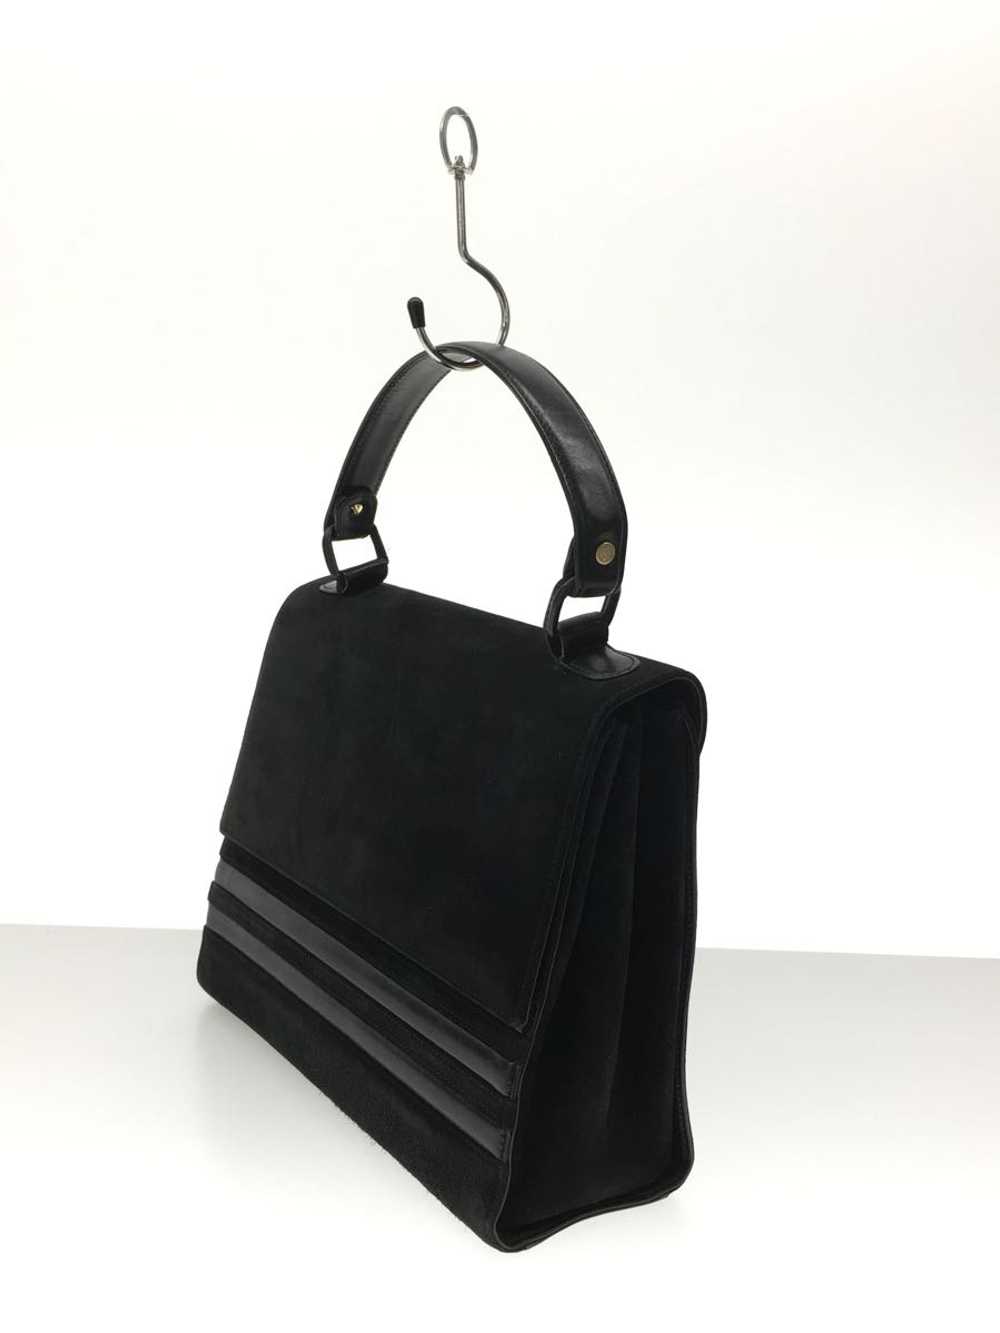 Gucci Handbag Leather Black Old Bag - image 2